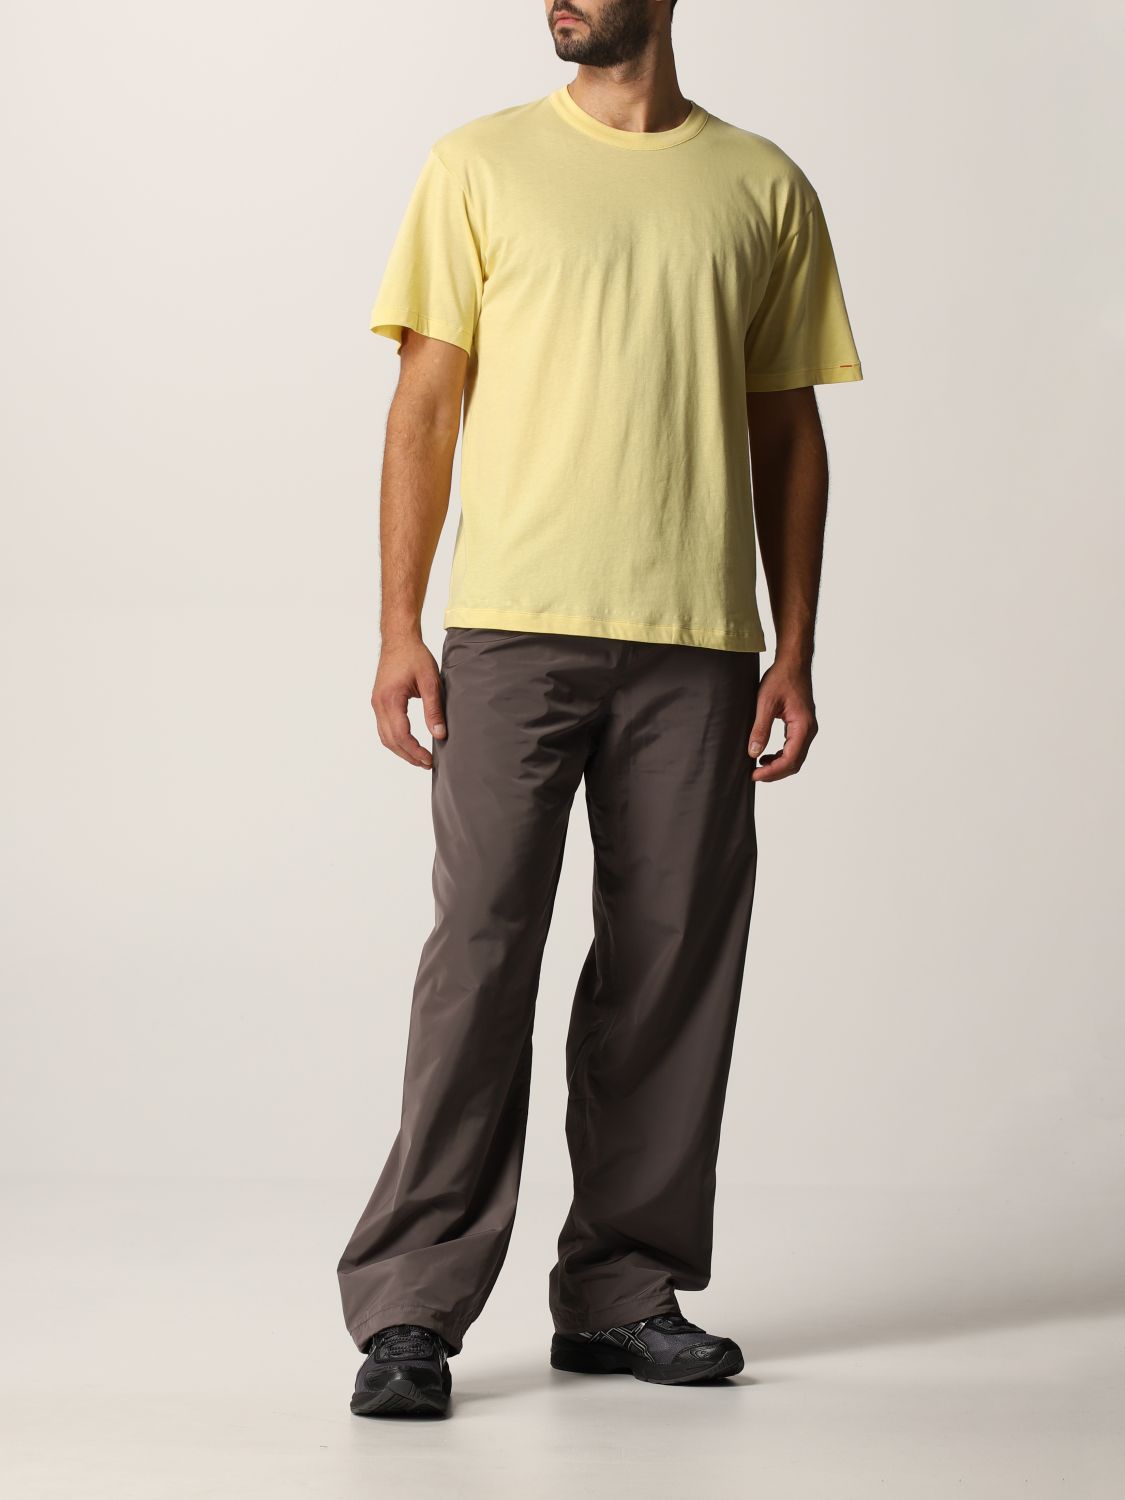 T恤 Heron Preston For Calvin Klein: Orange 2.0 Heron Preston x Calvin Klein 棉质 T恤三件套 黑色 7